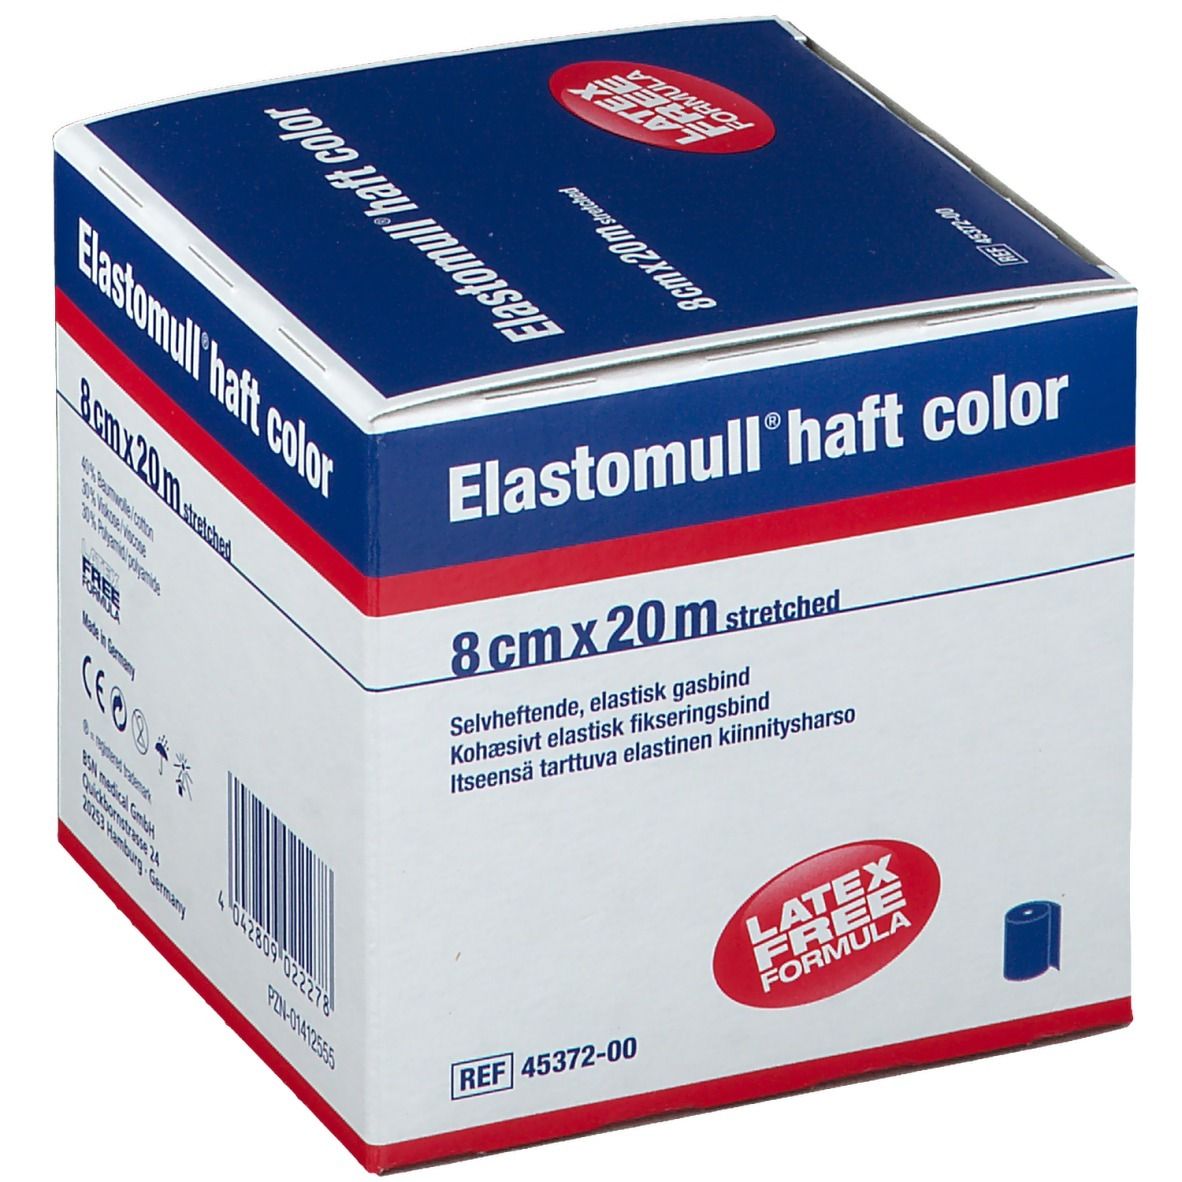 Elastomull® haft color 8 cm x 20 m blau